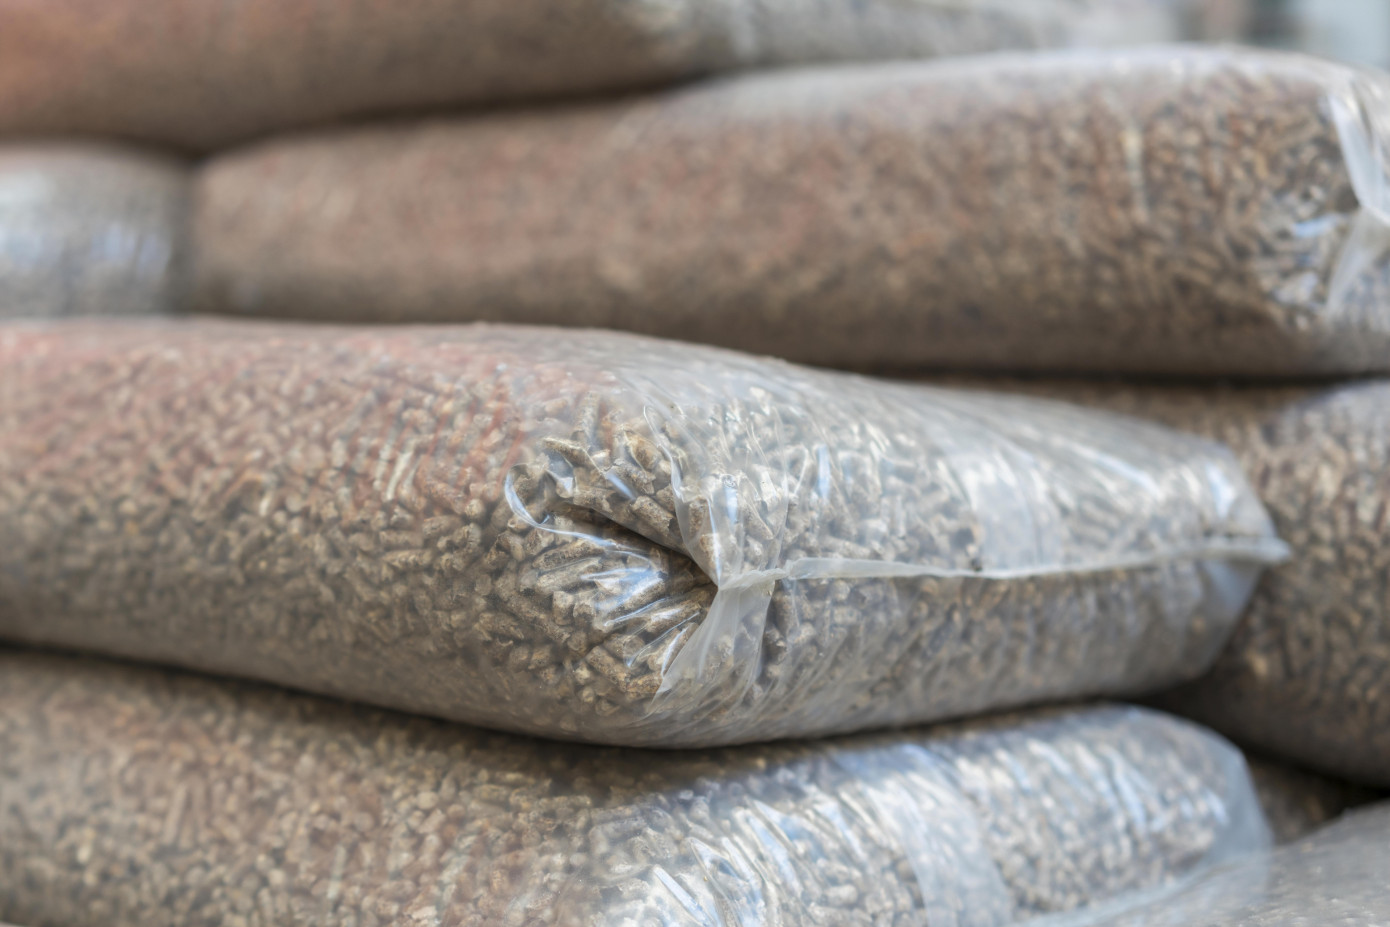 Japan import wood pellets price increases 12% in June